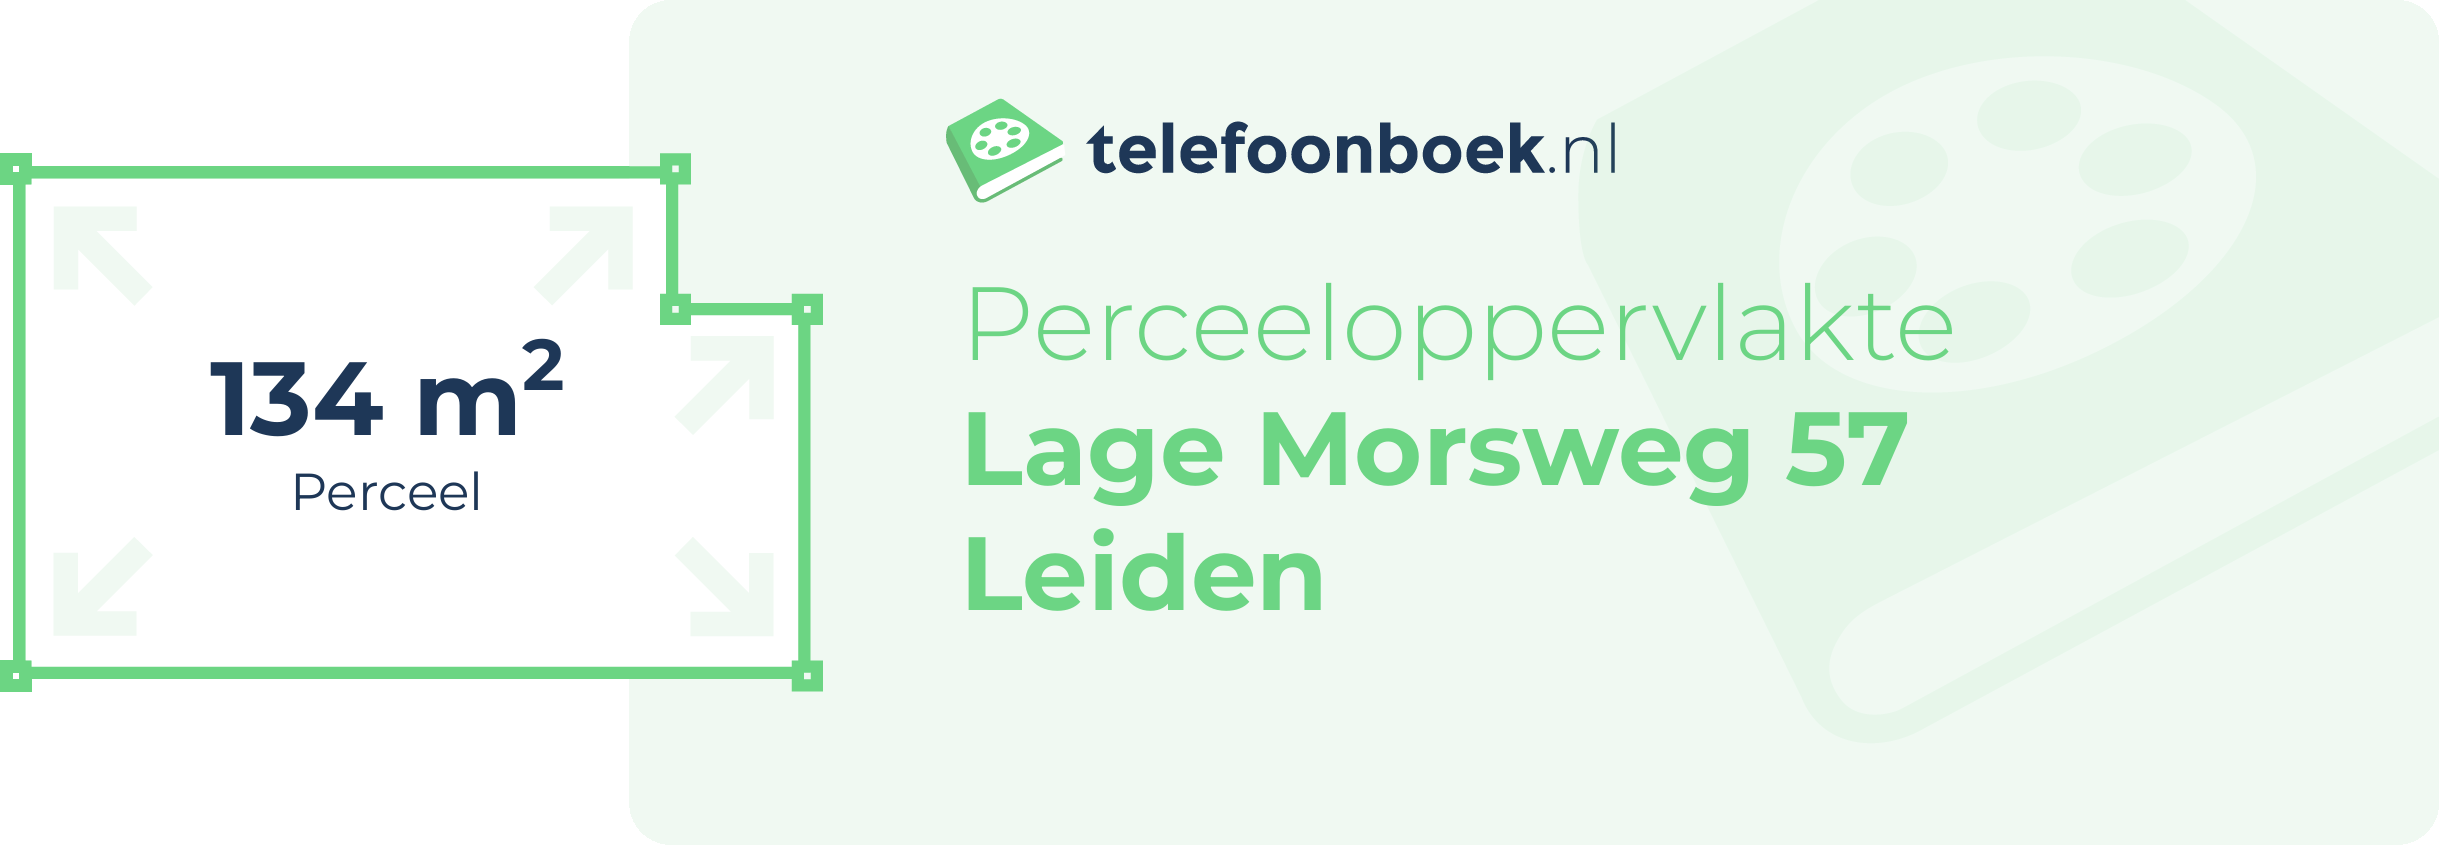 Perceeloppervlakte Lage Morsweg 57 Leiden